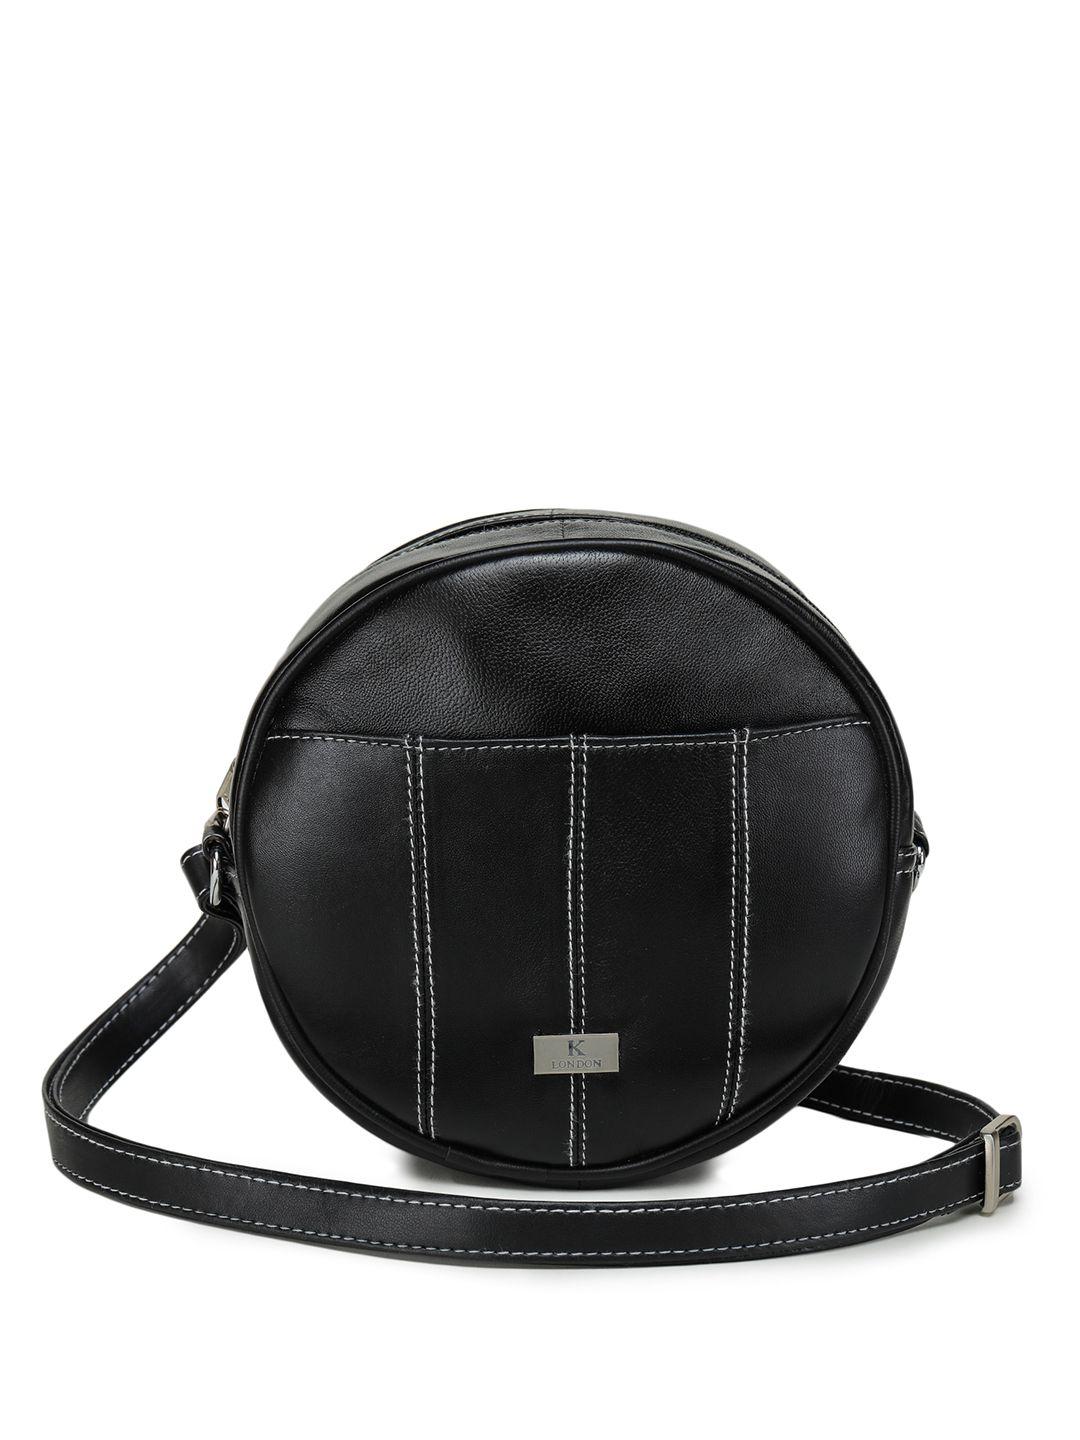 k london leather structured sling bag